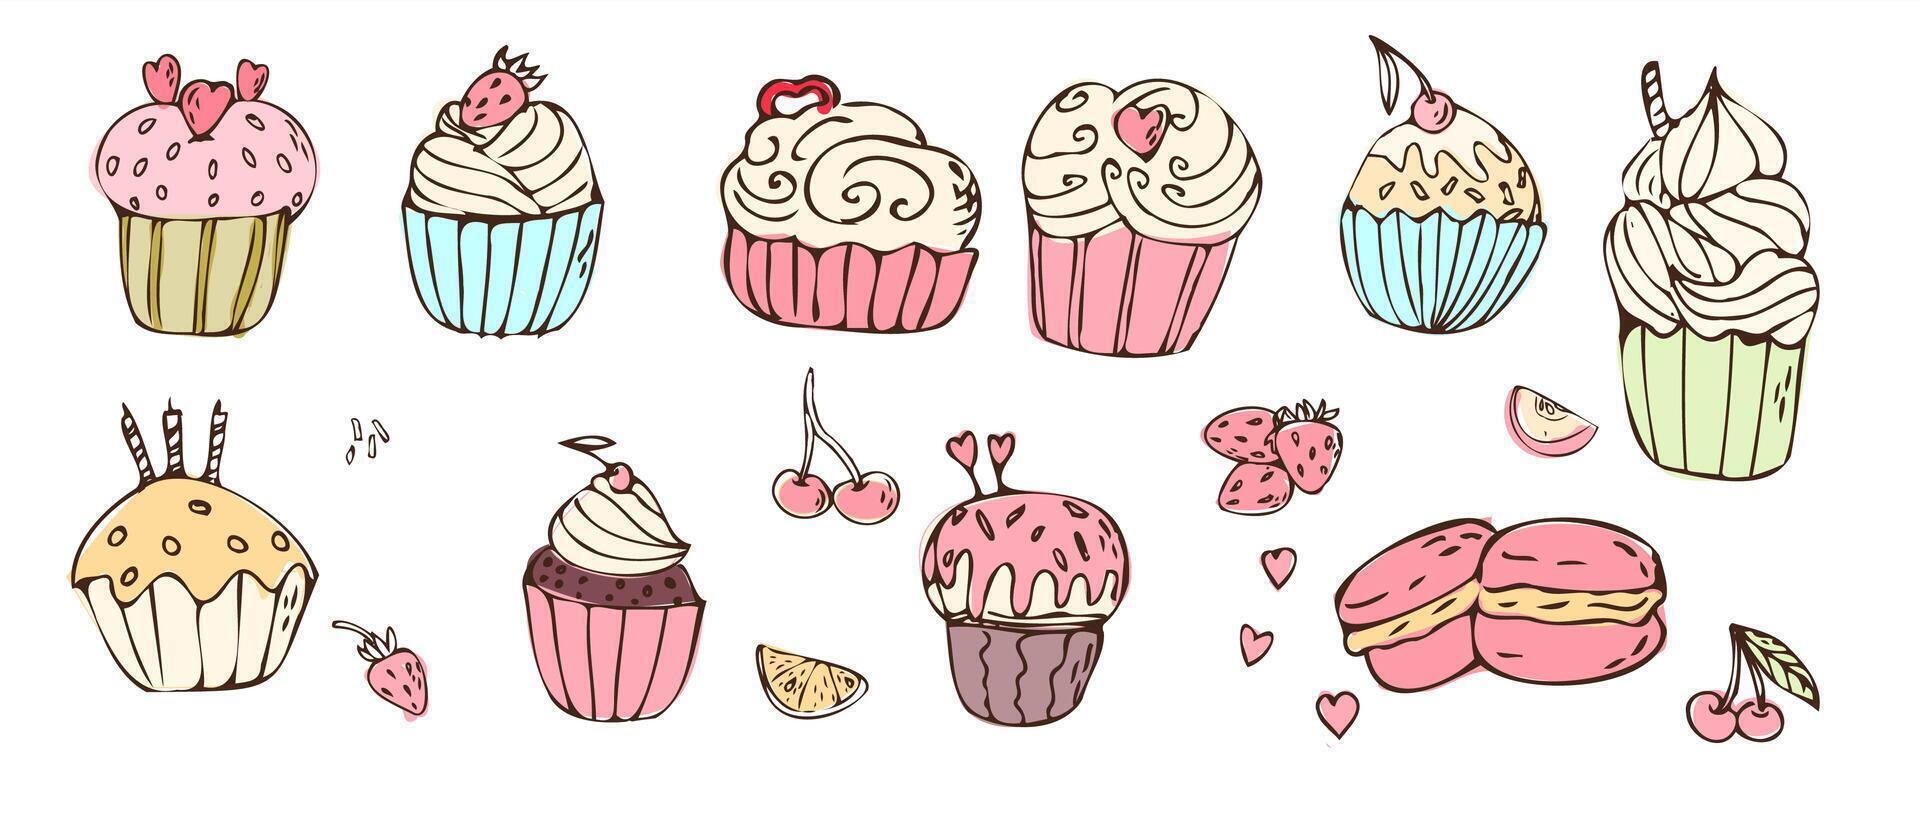 tekening cupcakes en bitterkoekjes met room, zoet voedsel groot set. vector illustratie kan gebruikt voor bakkerij achtergrond, uitnodiging kaart, poster, textiel, banier, groet kaart, uitnodiging kaart, bakkerij ontwerp